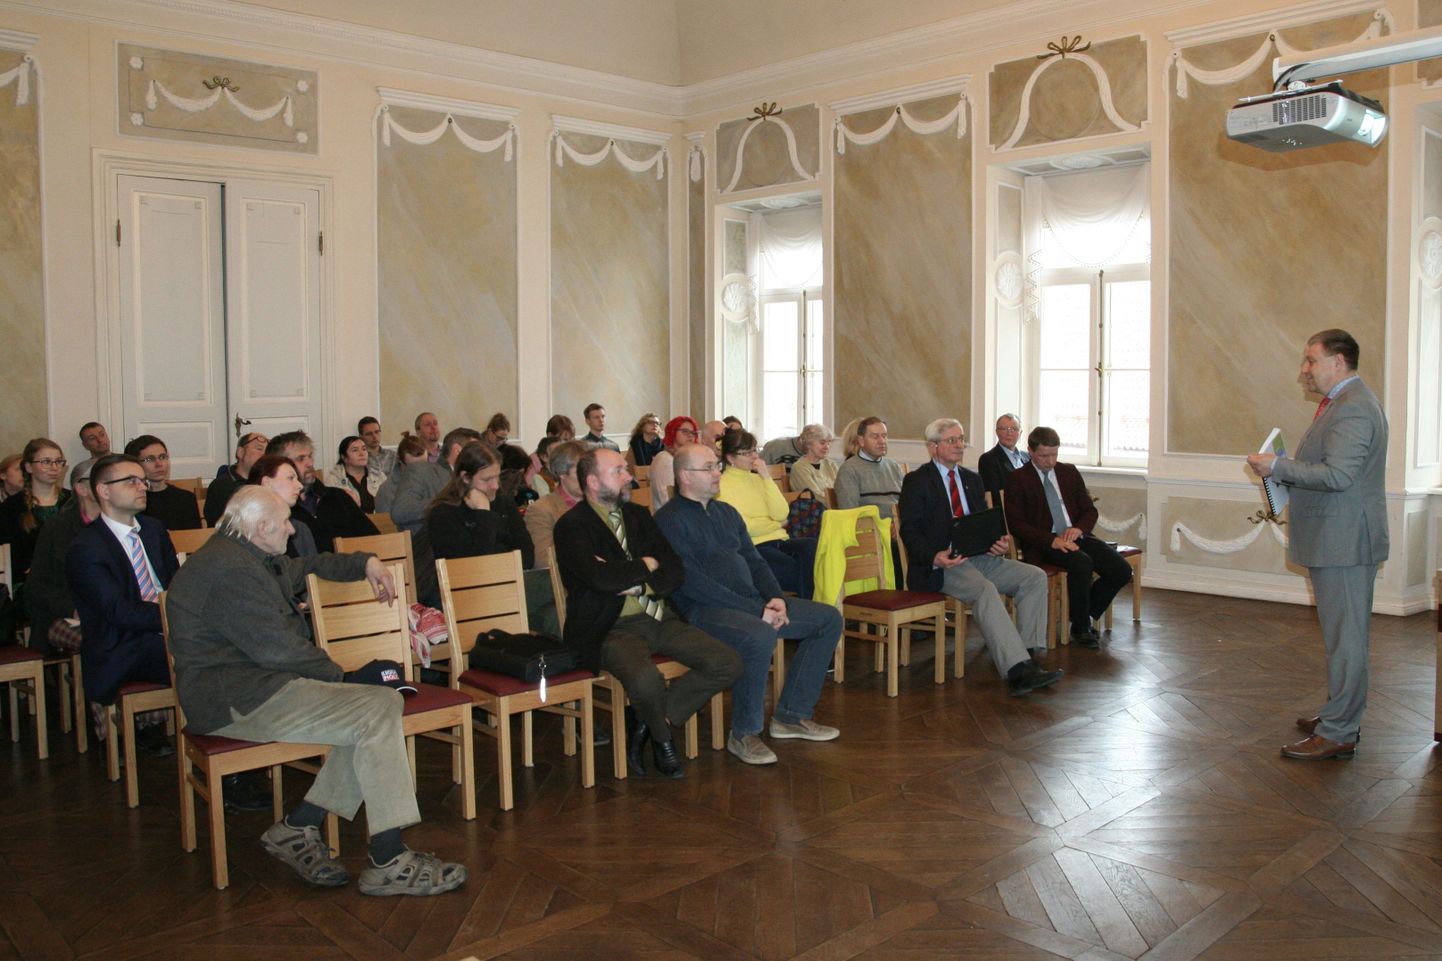 Rattaliikluse tuleviku arutelu tõi Tartu raekoja saali inimesi täis. Pildil esineb kokkutulnutele Jarno Laur.